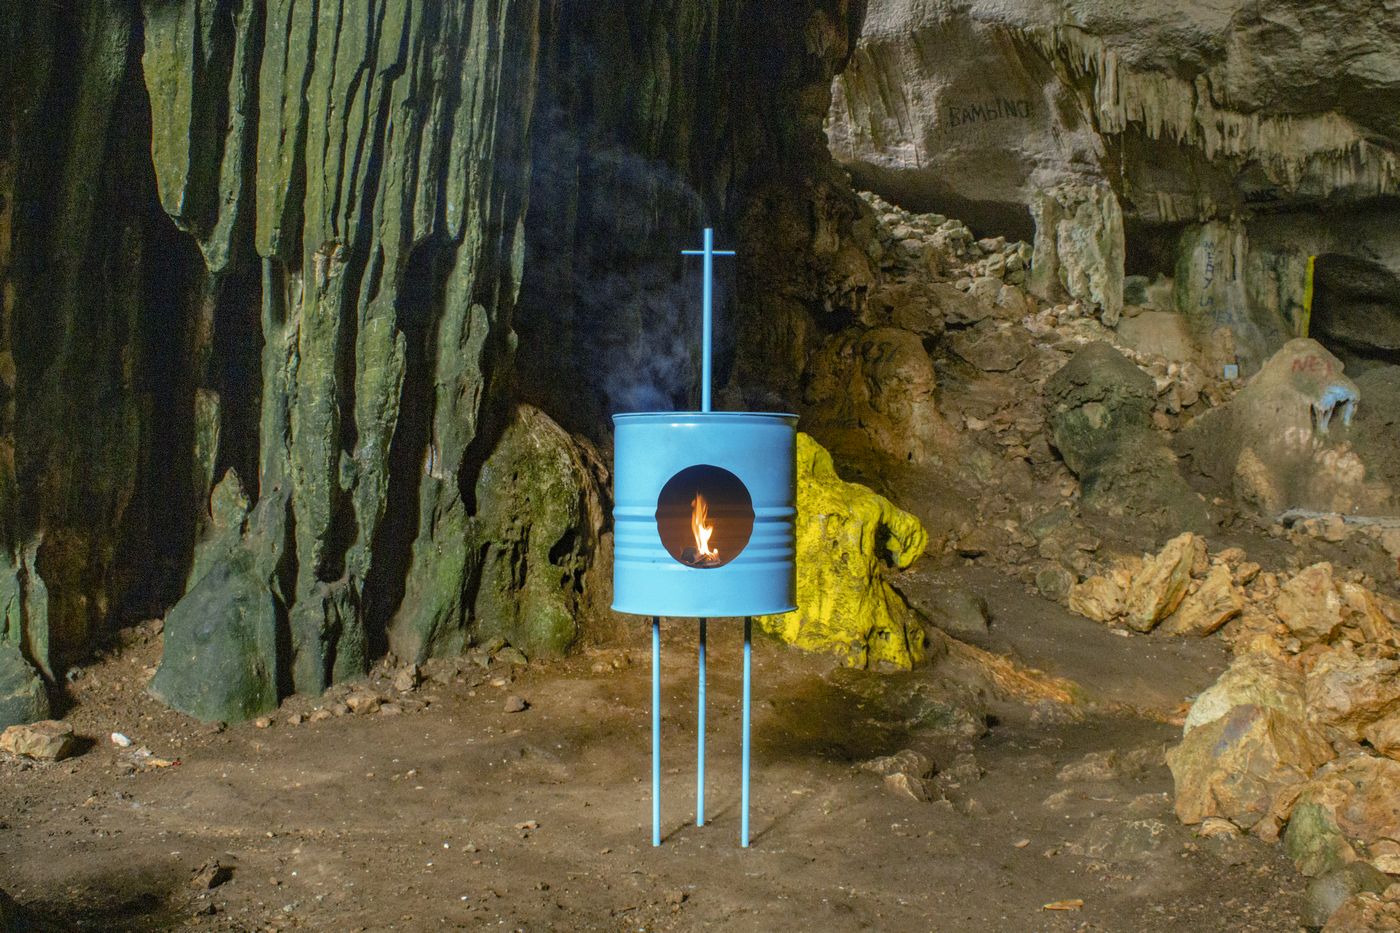 Engel Leonardo, Yaguate, 2023. Hierro, esmalte, copey y candela. Cortesía del artista